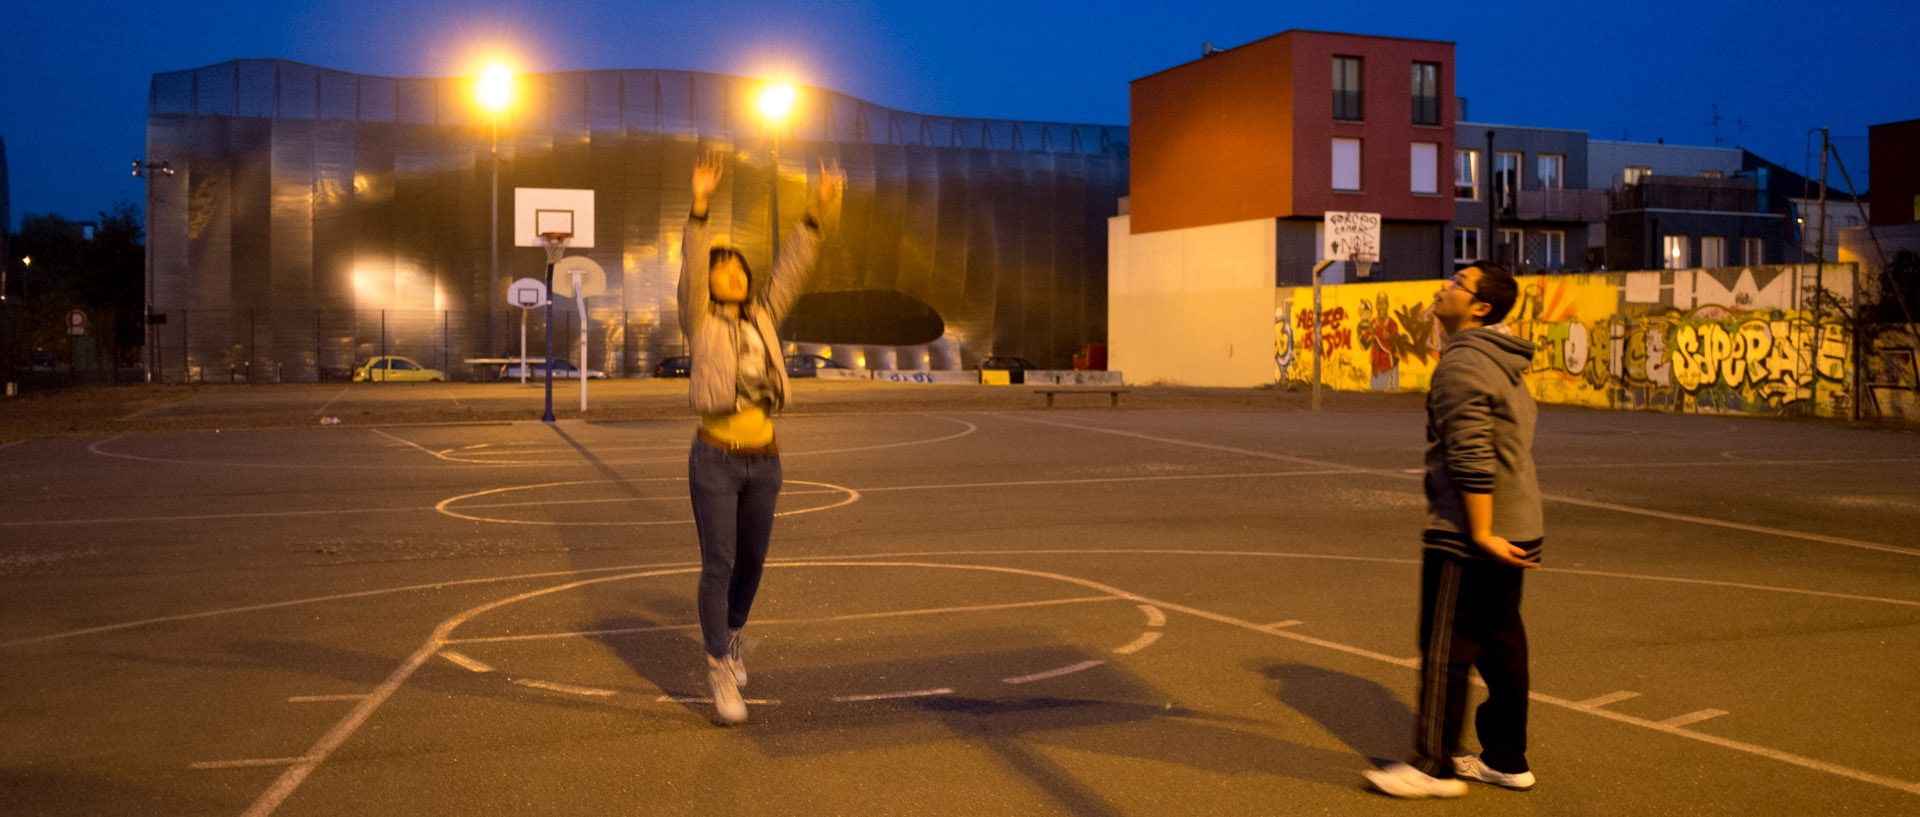 Etudiants vietnamiens jouant au basket, rue de Wagram, à Lille.